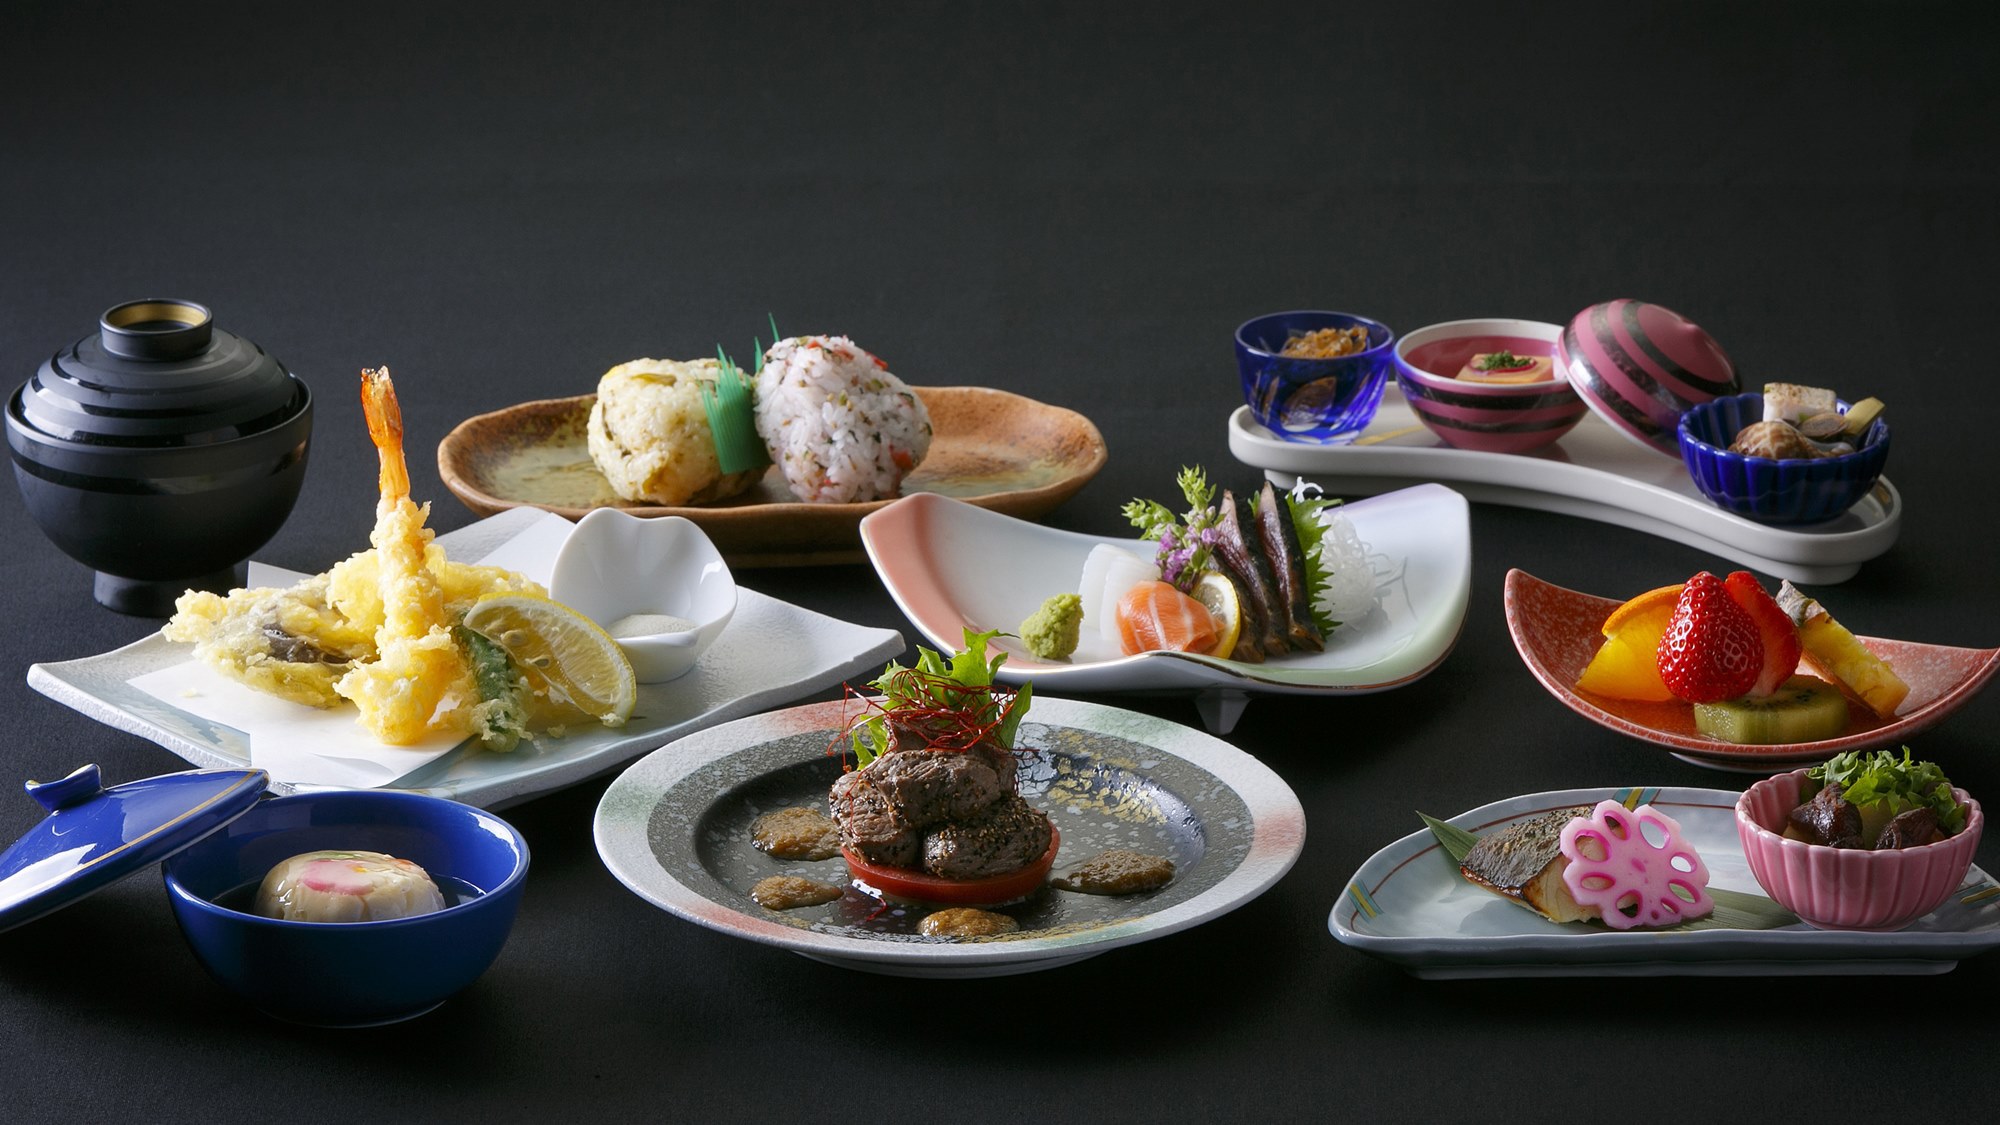 【懐石Aコース】九州の食材をふんだんに使った和洋中の創作懐石料理